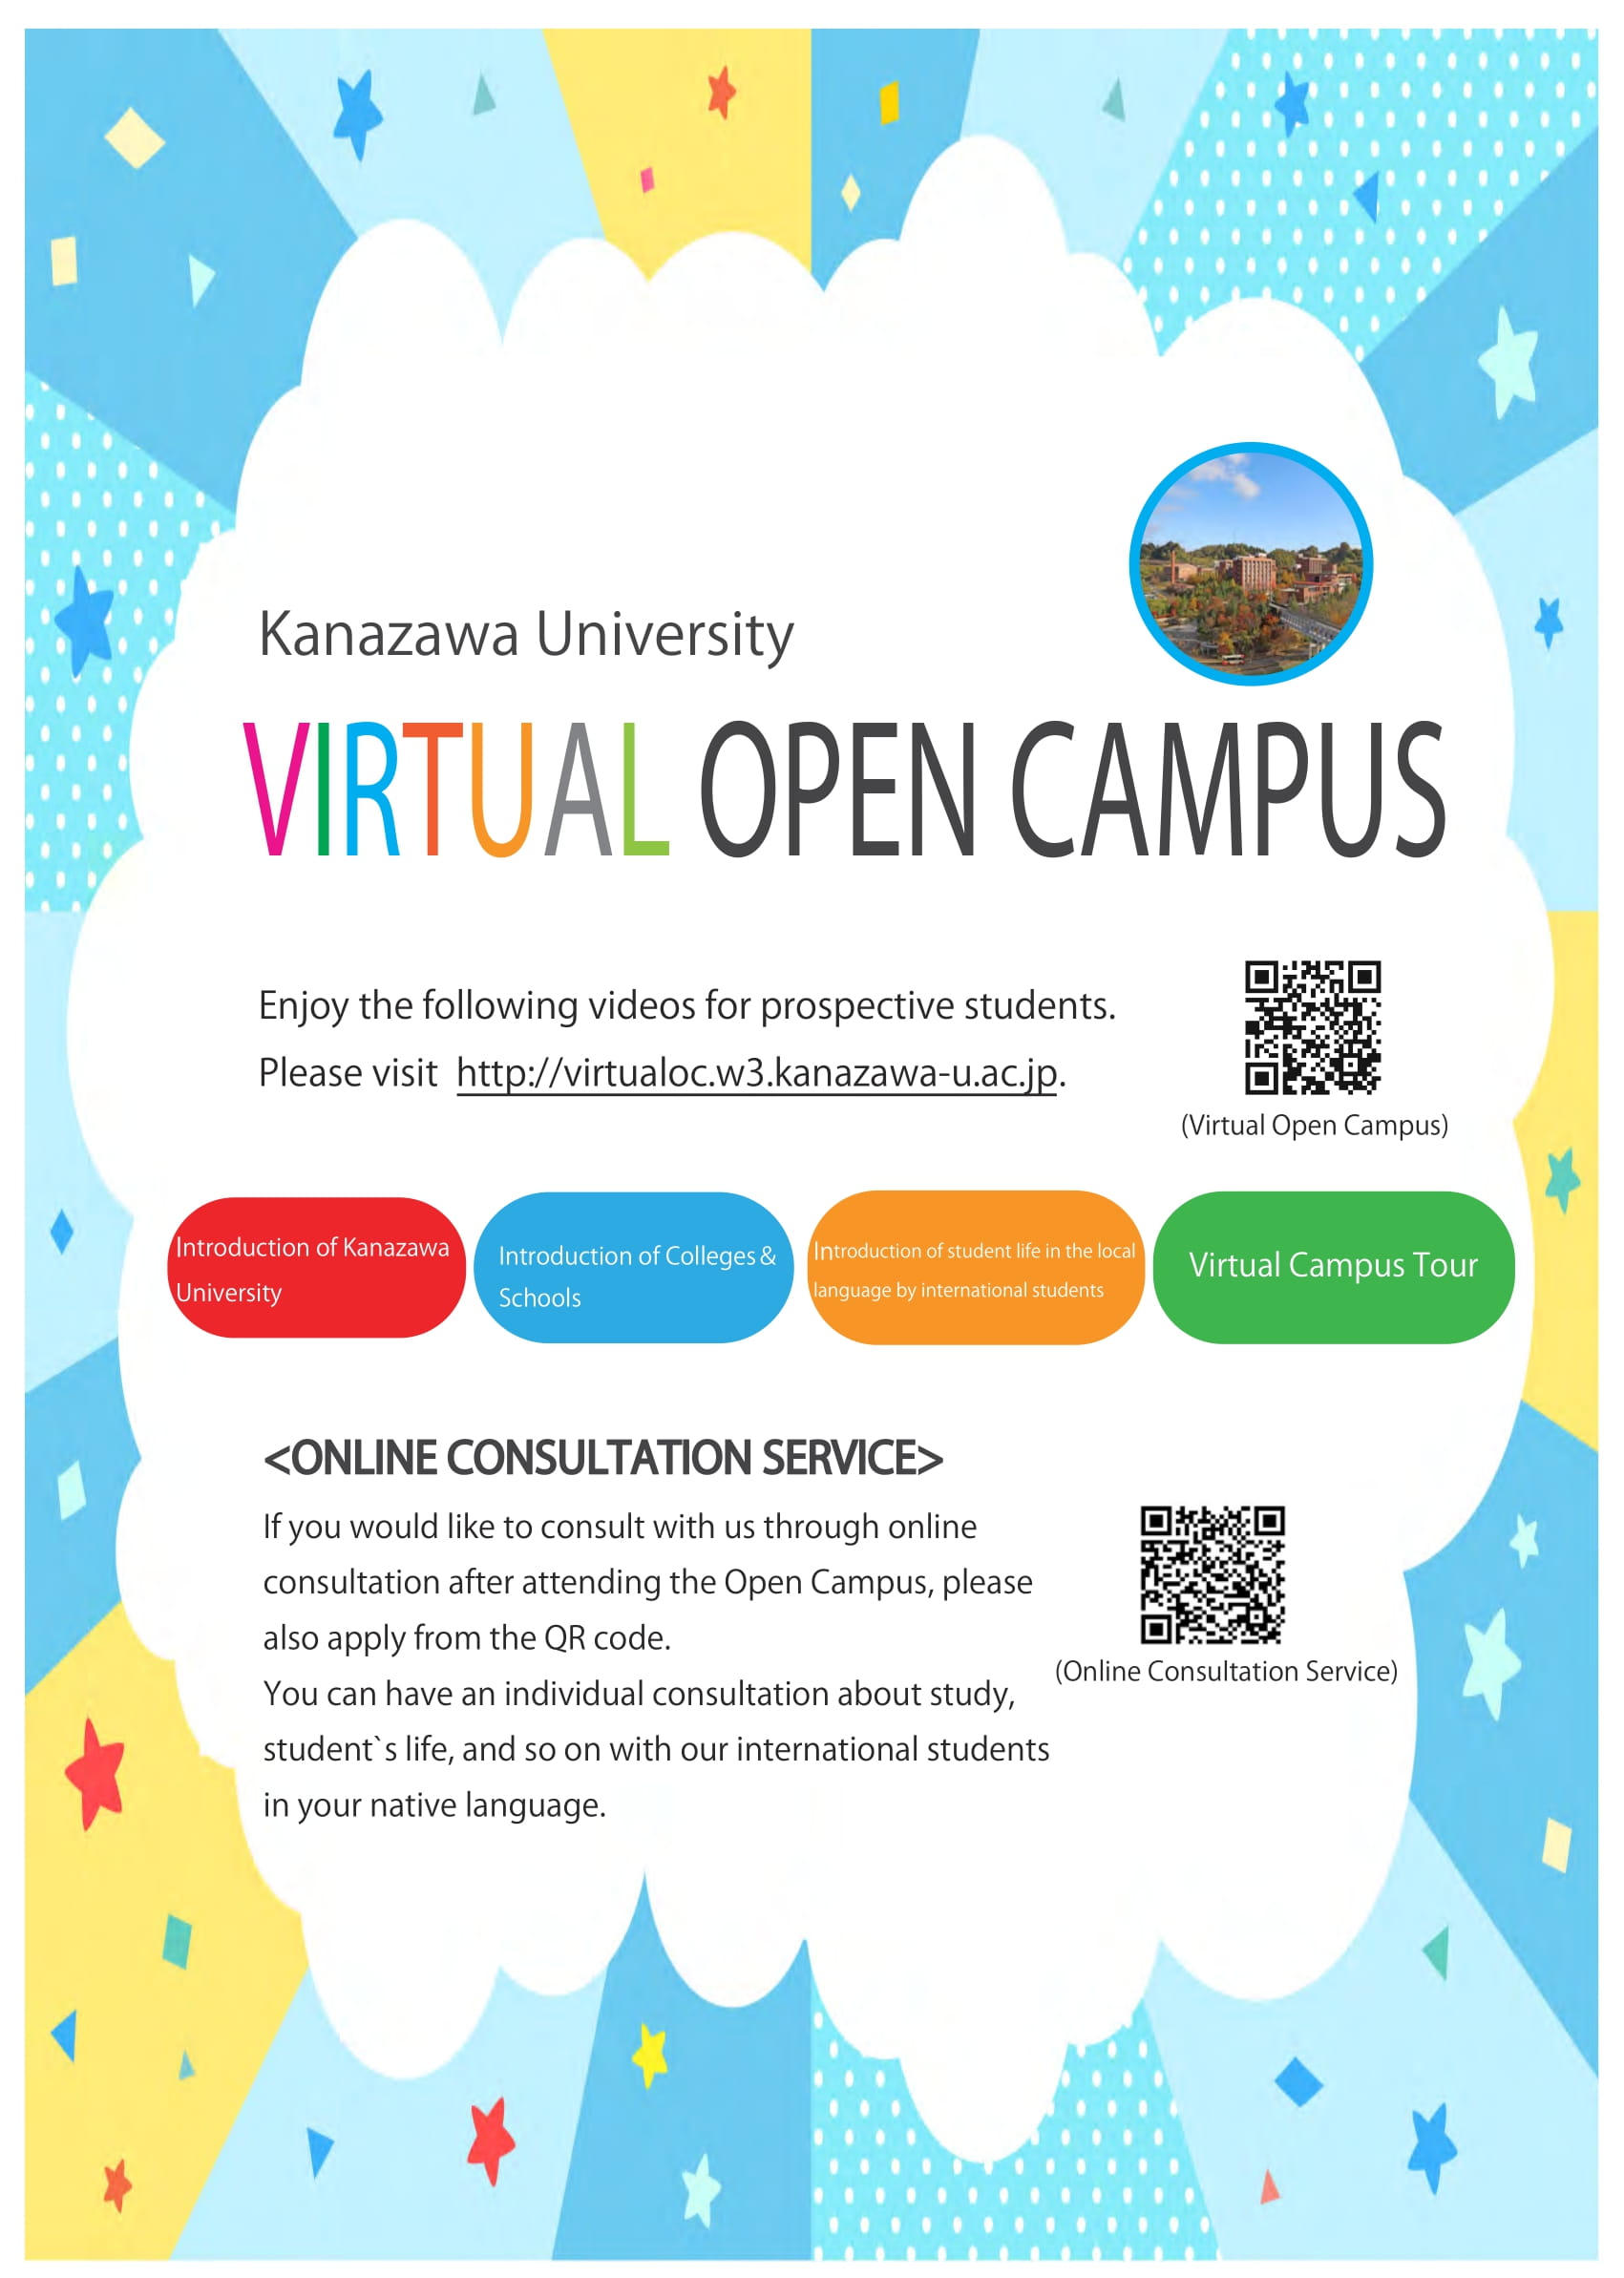 Kanazawa University Virtual Open Campus